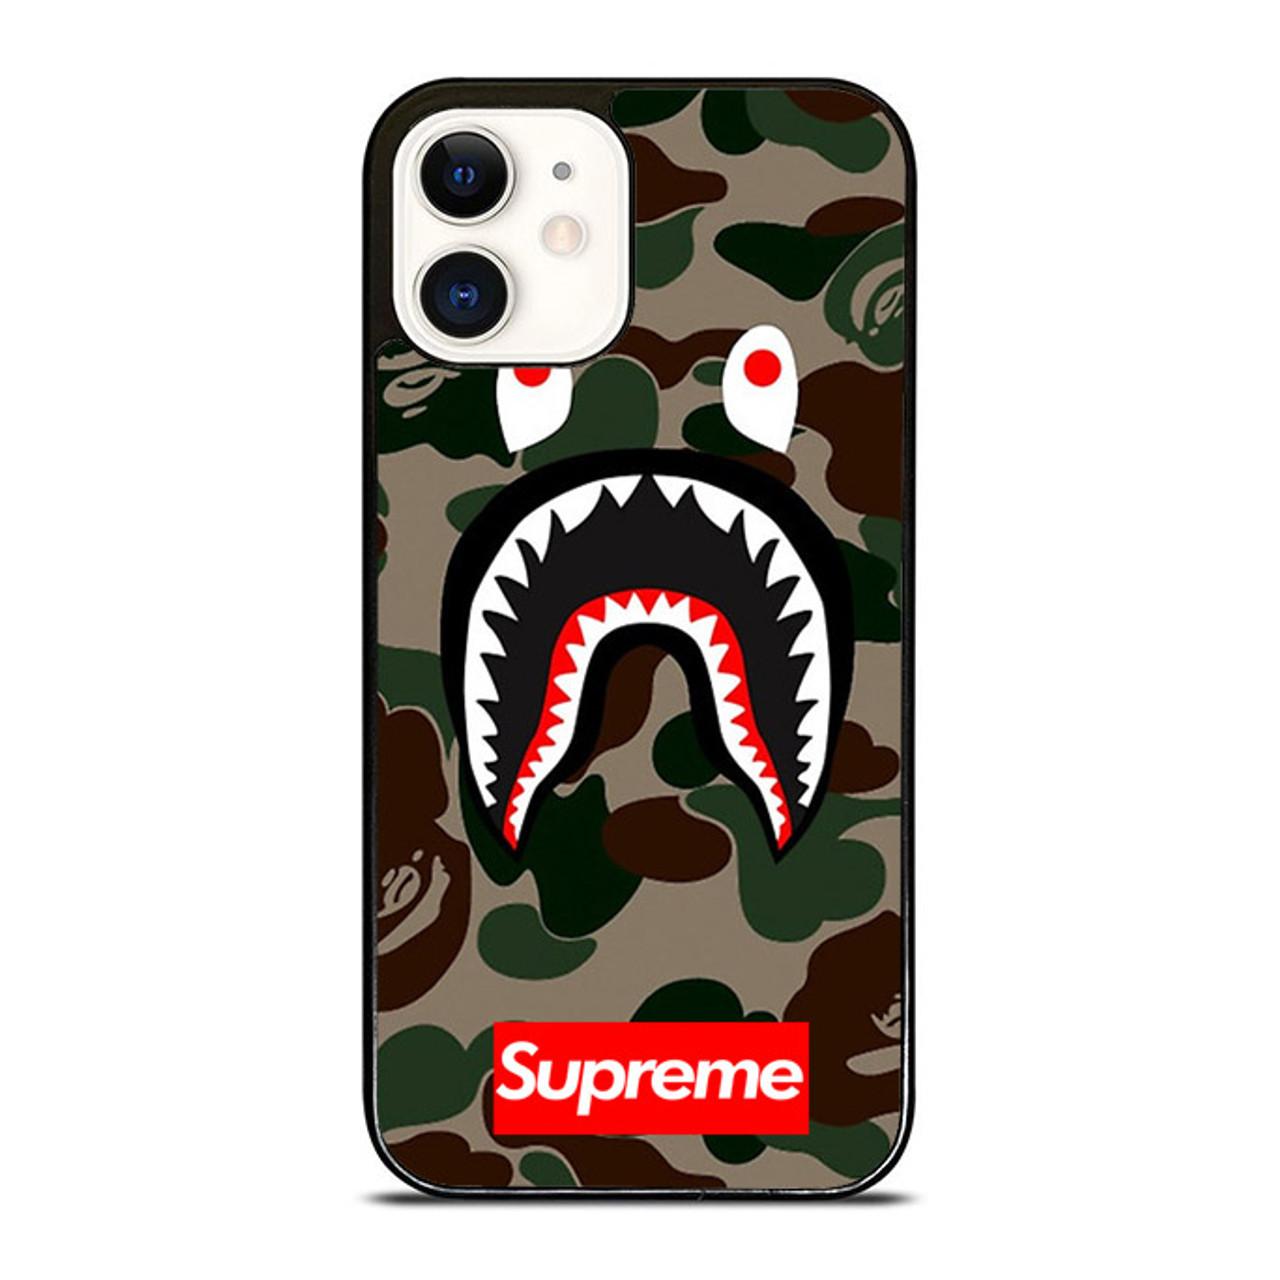 SUPREME BAPE CAMO SHARK iPhone 12 Pro Max Case Cover